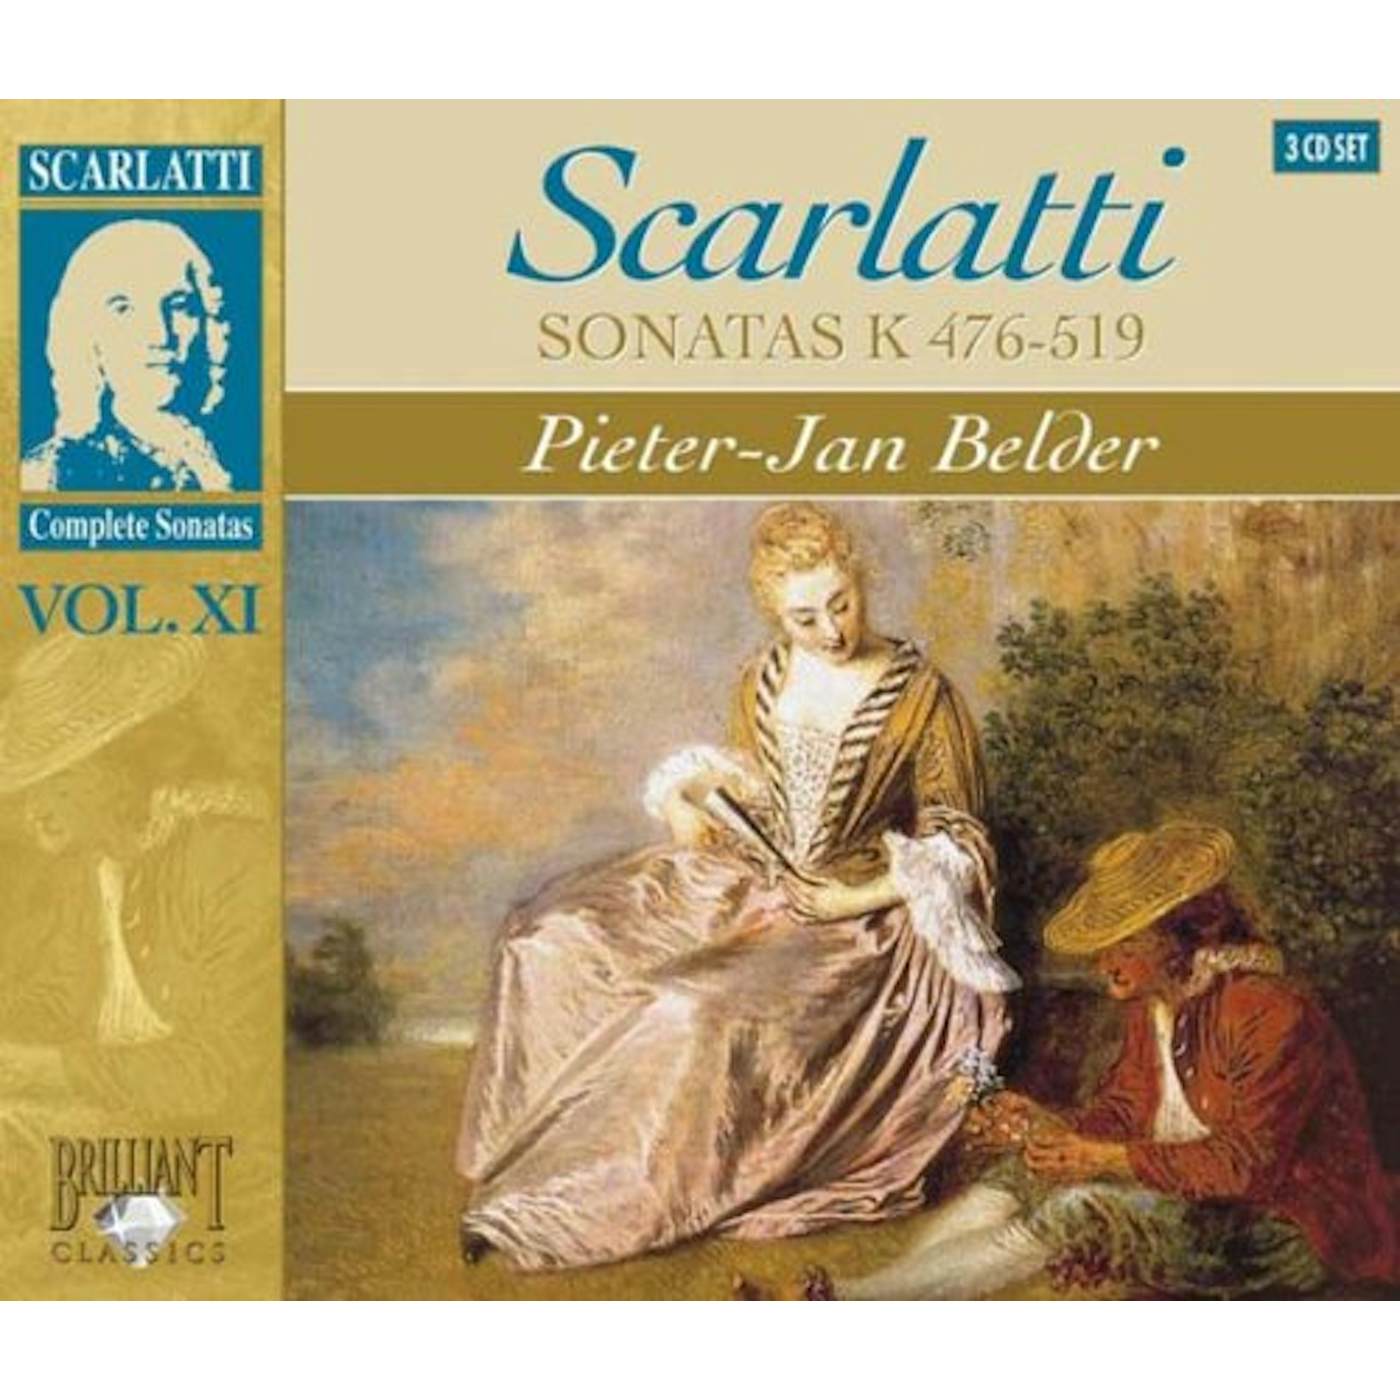 Scarlatti SONATAS XI CD